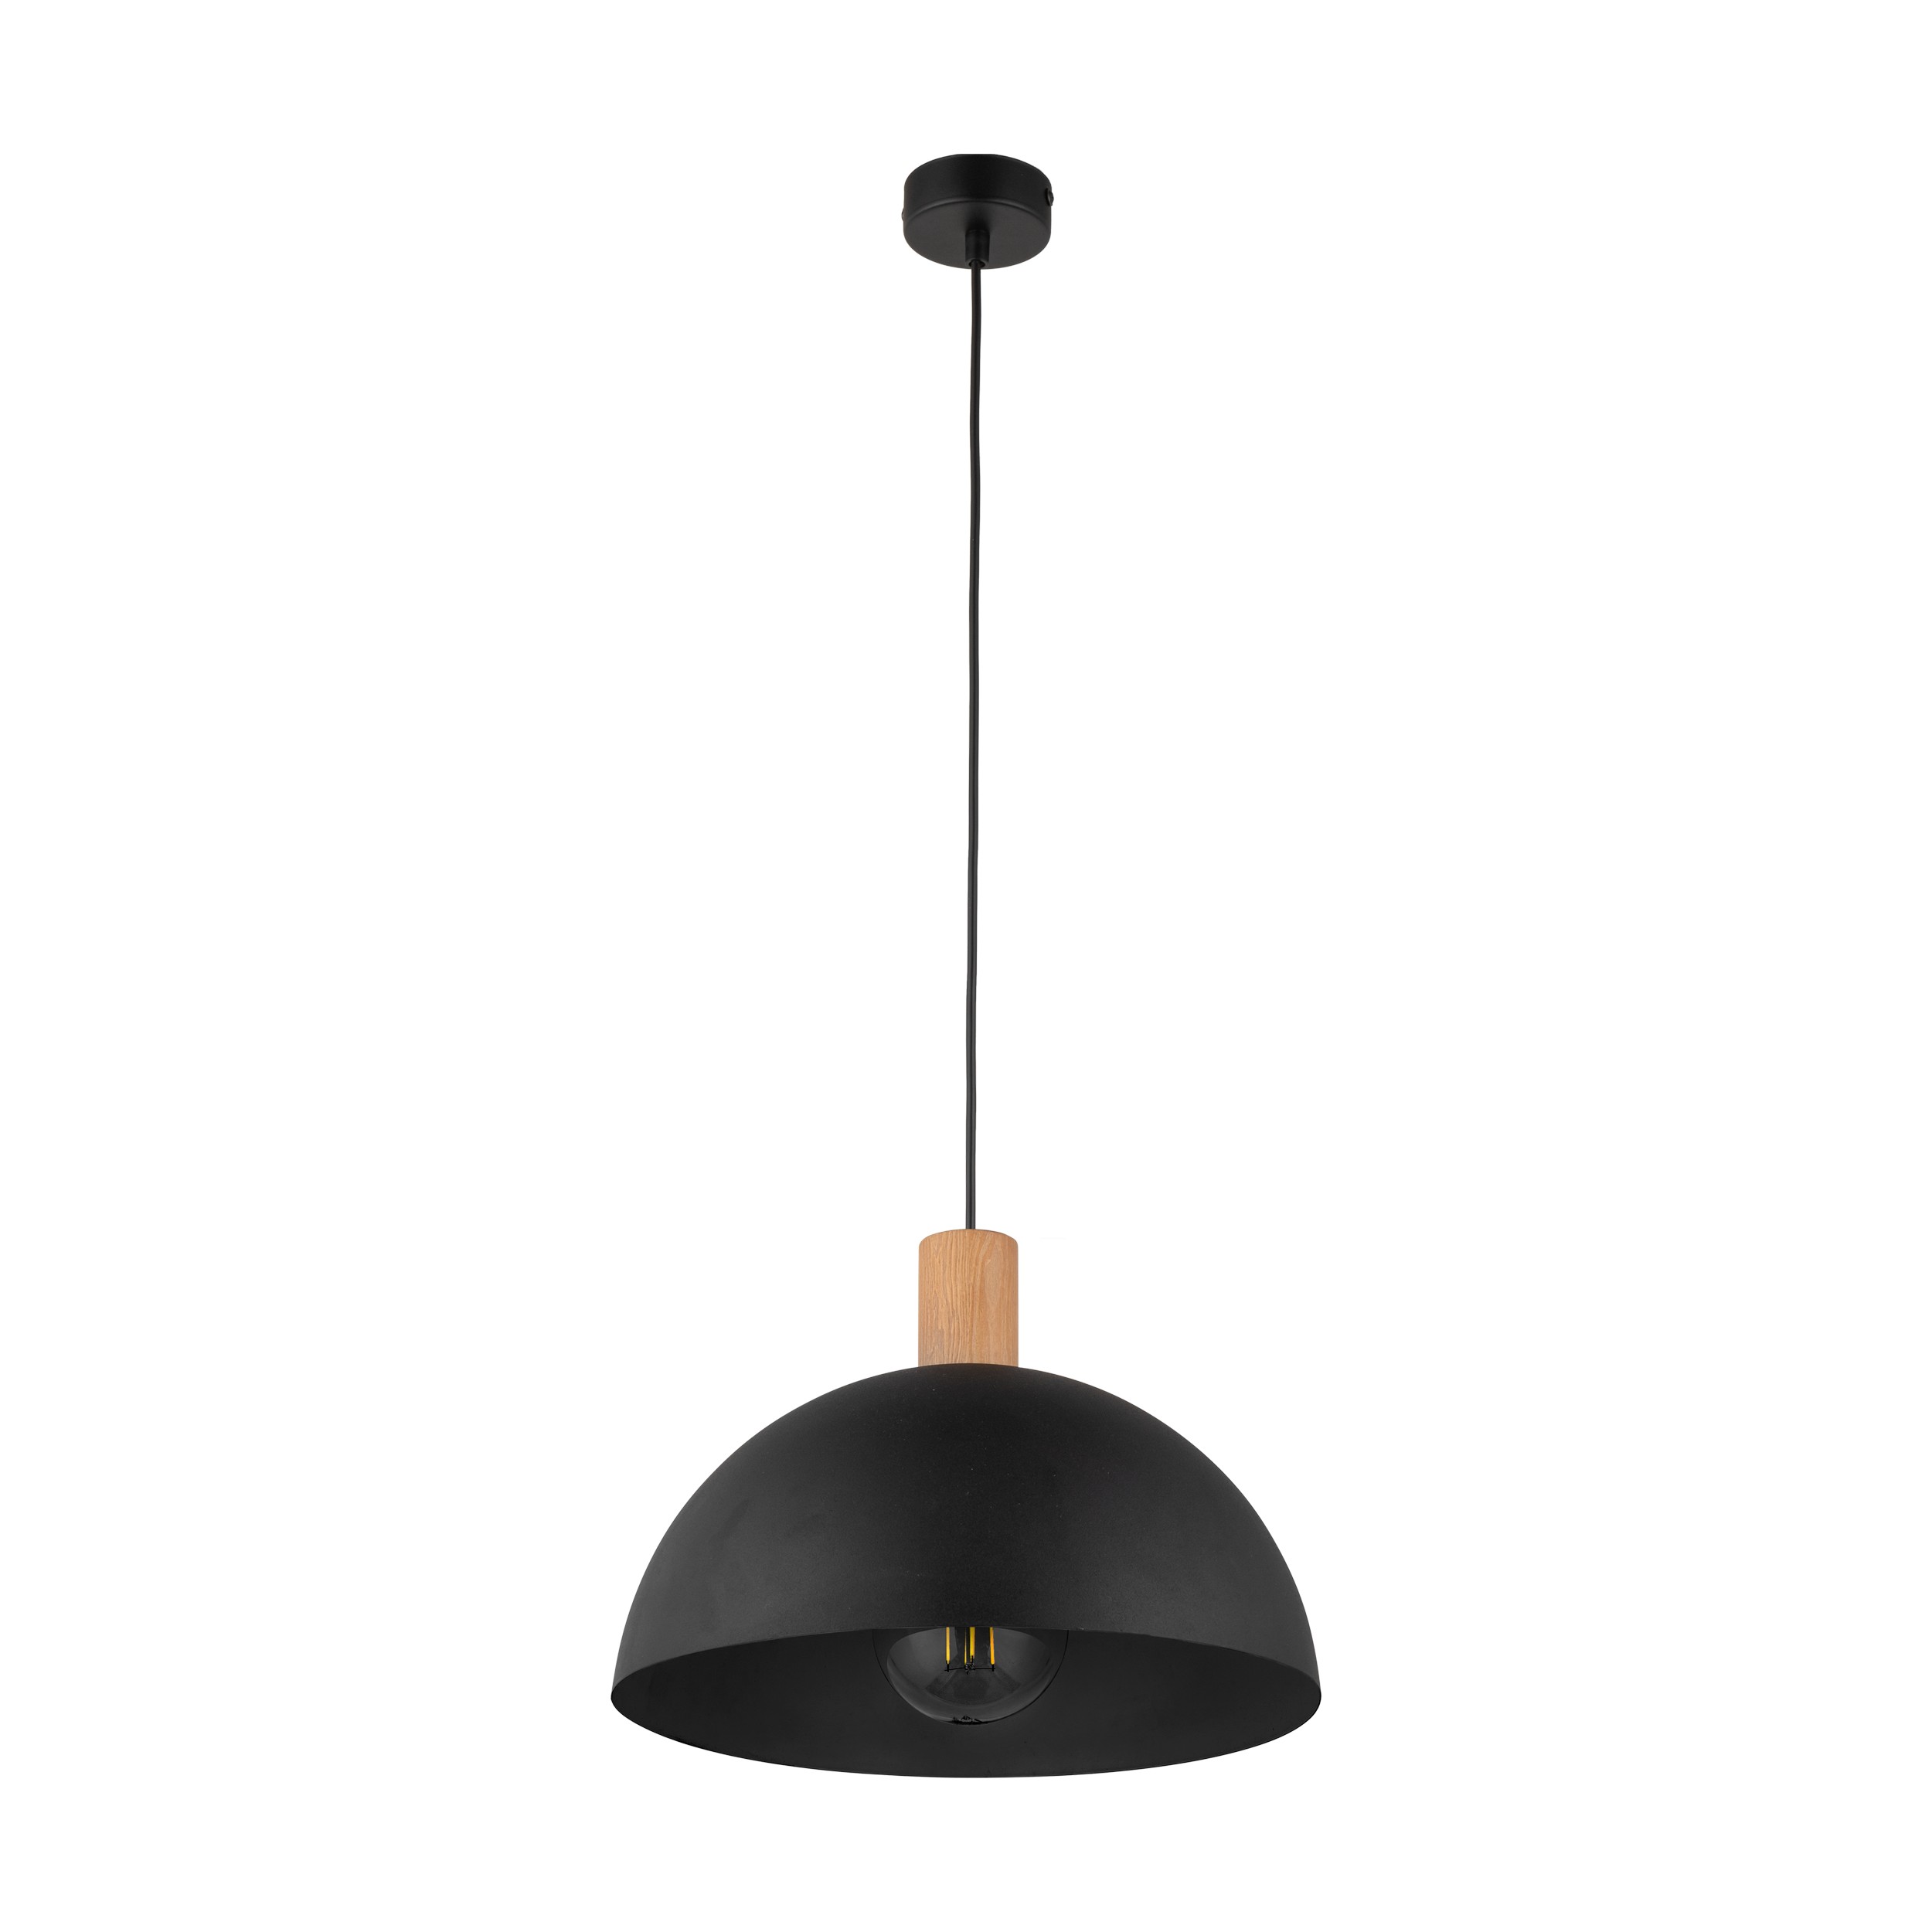 TK Oslo taklampa - svart metall och trä